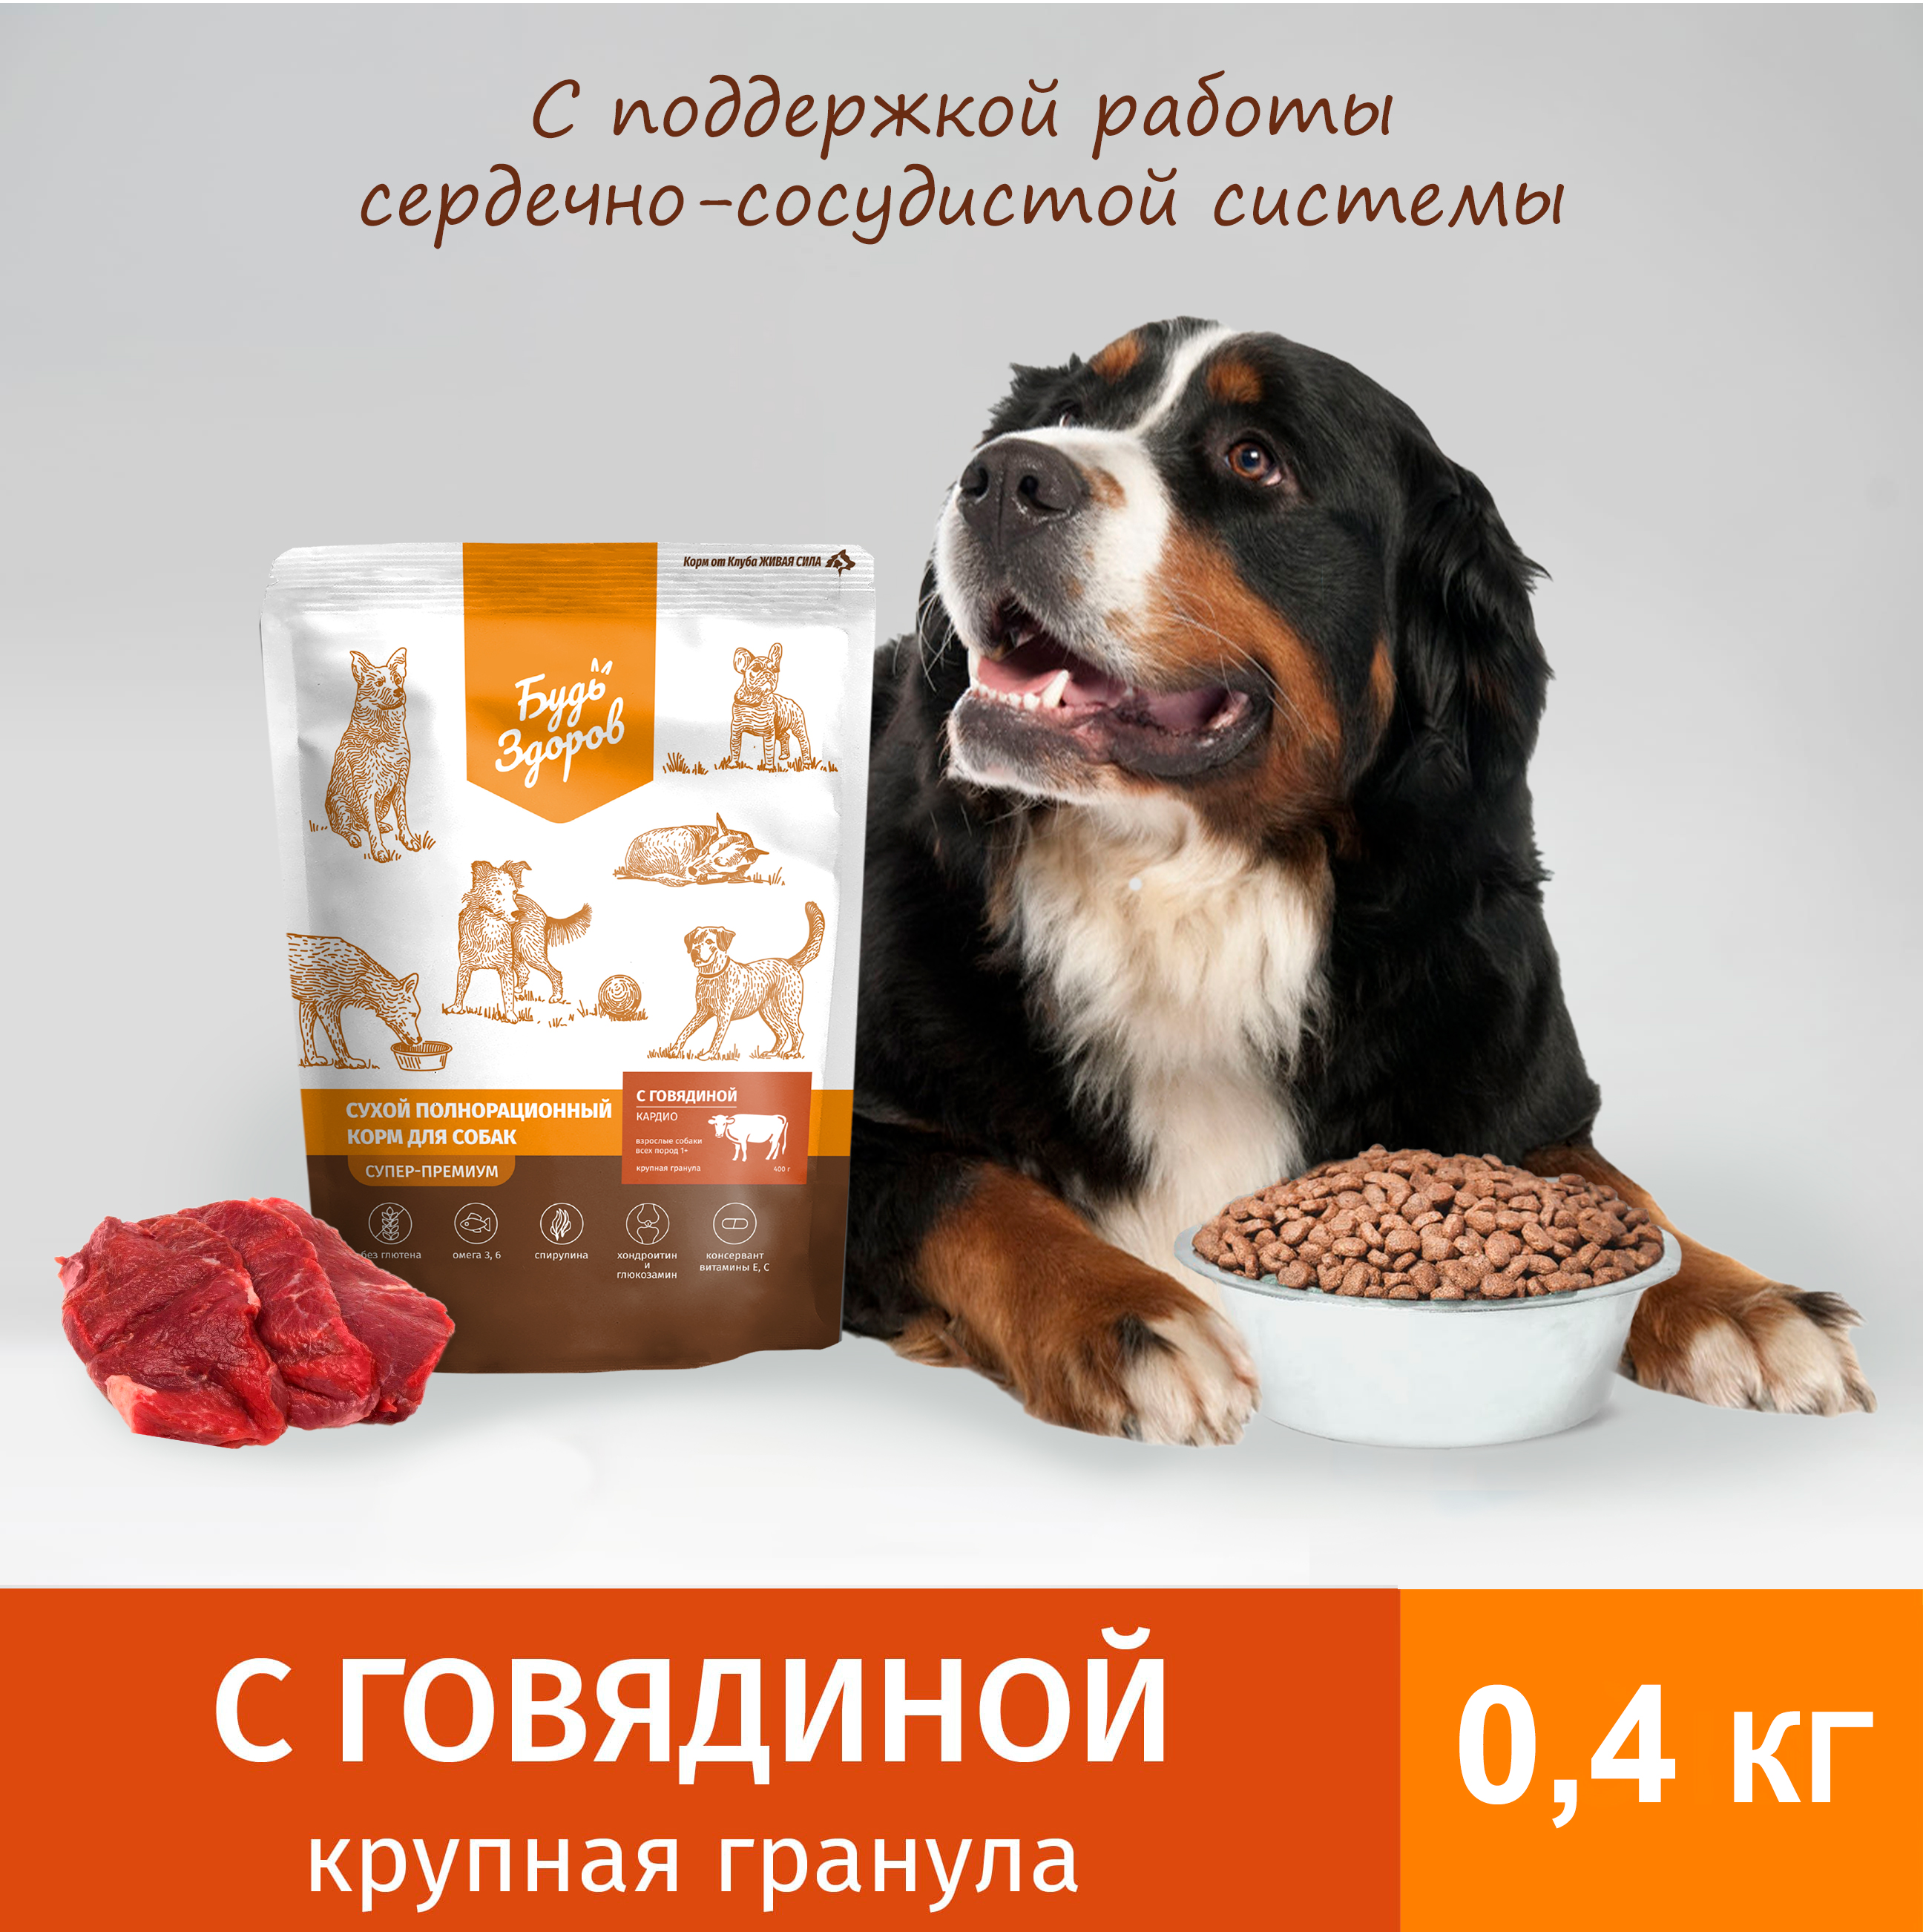 Сухой корм для собак Будь Здоров Живая Сила, крупная гранула, с говядиной, 0,4 кг